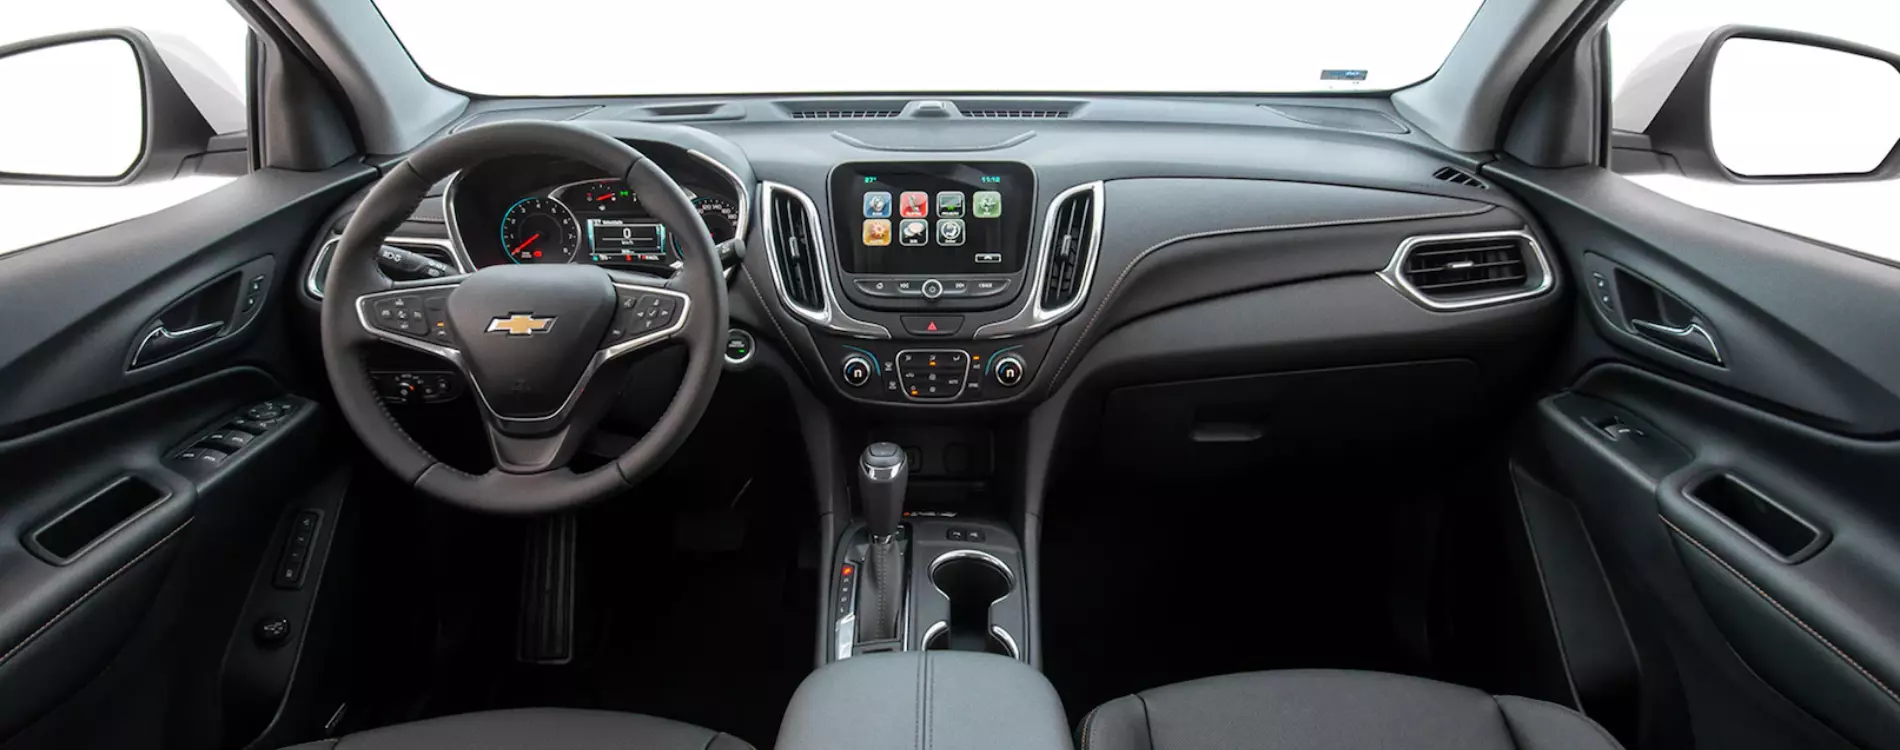 Fotografia feita do interior do veículo mostrando o painel tecnológico incluso no SUV Equinox